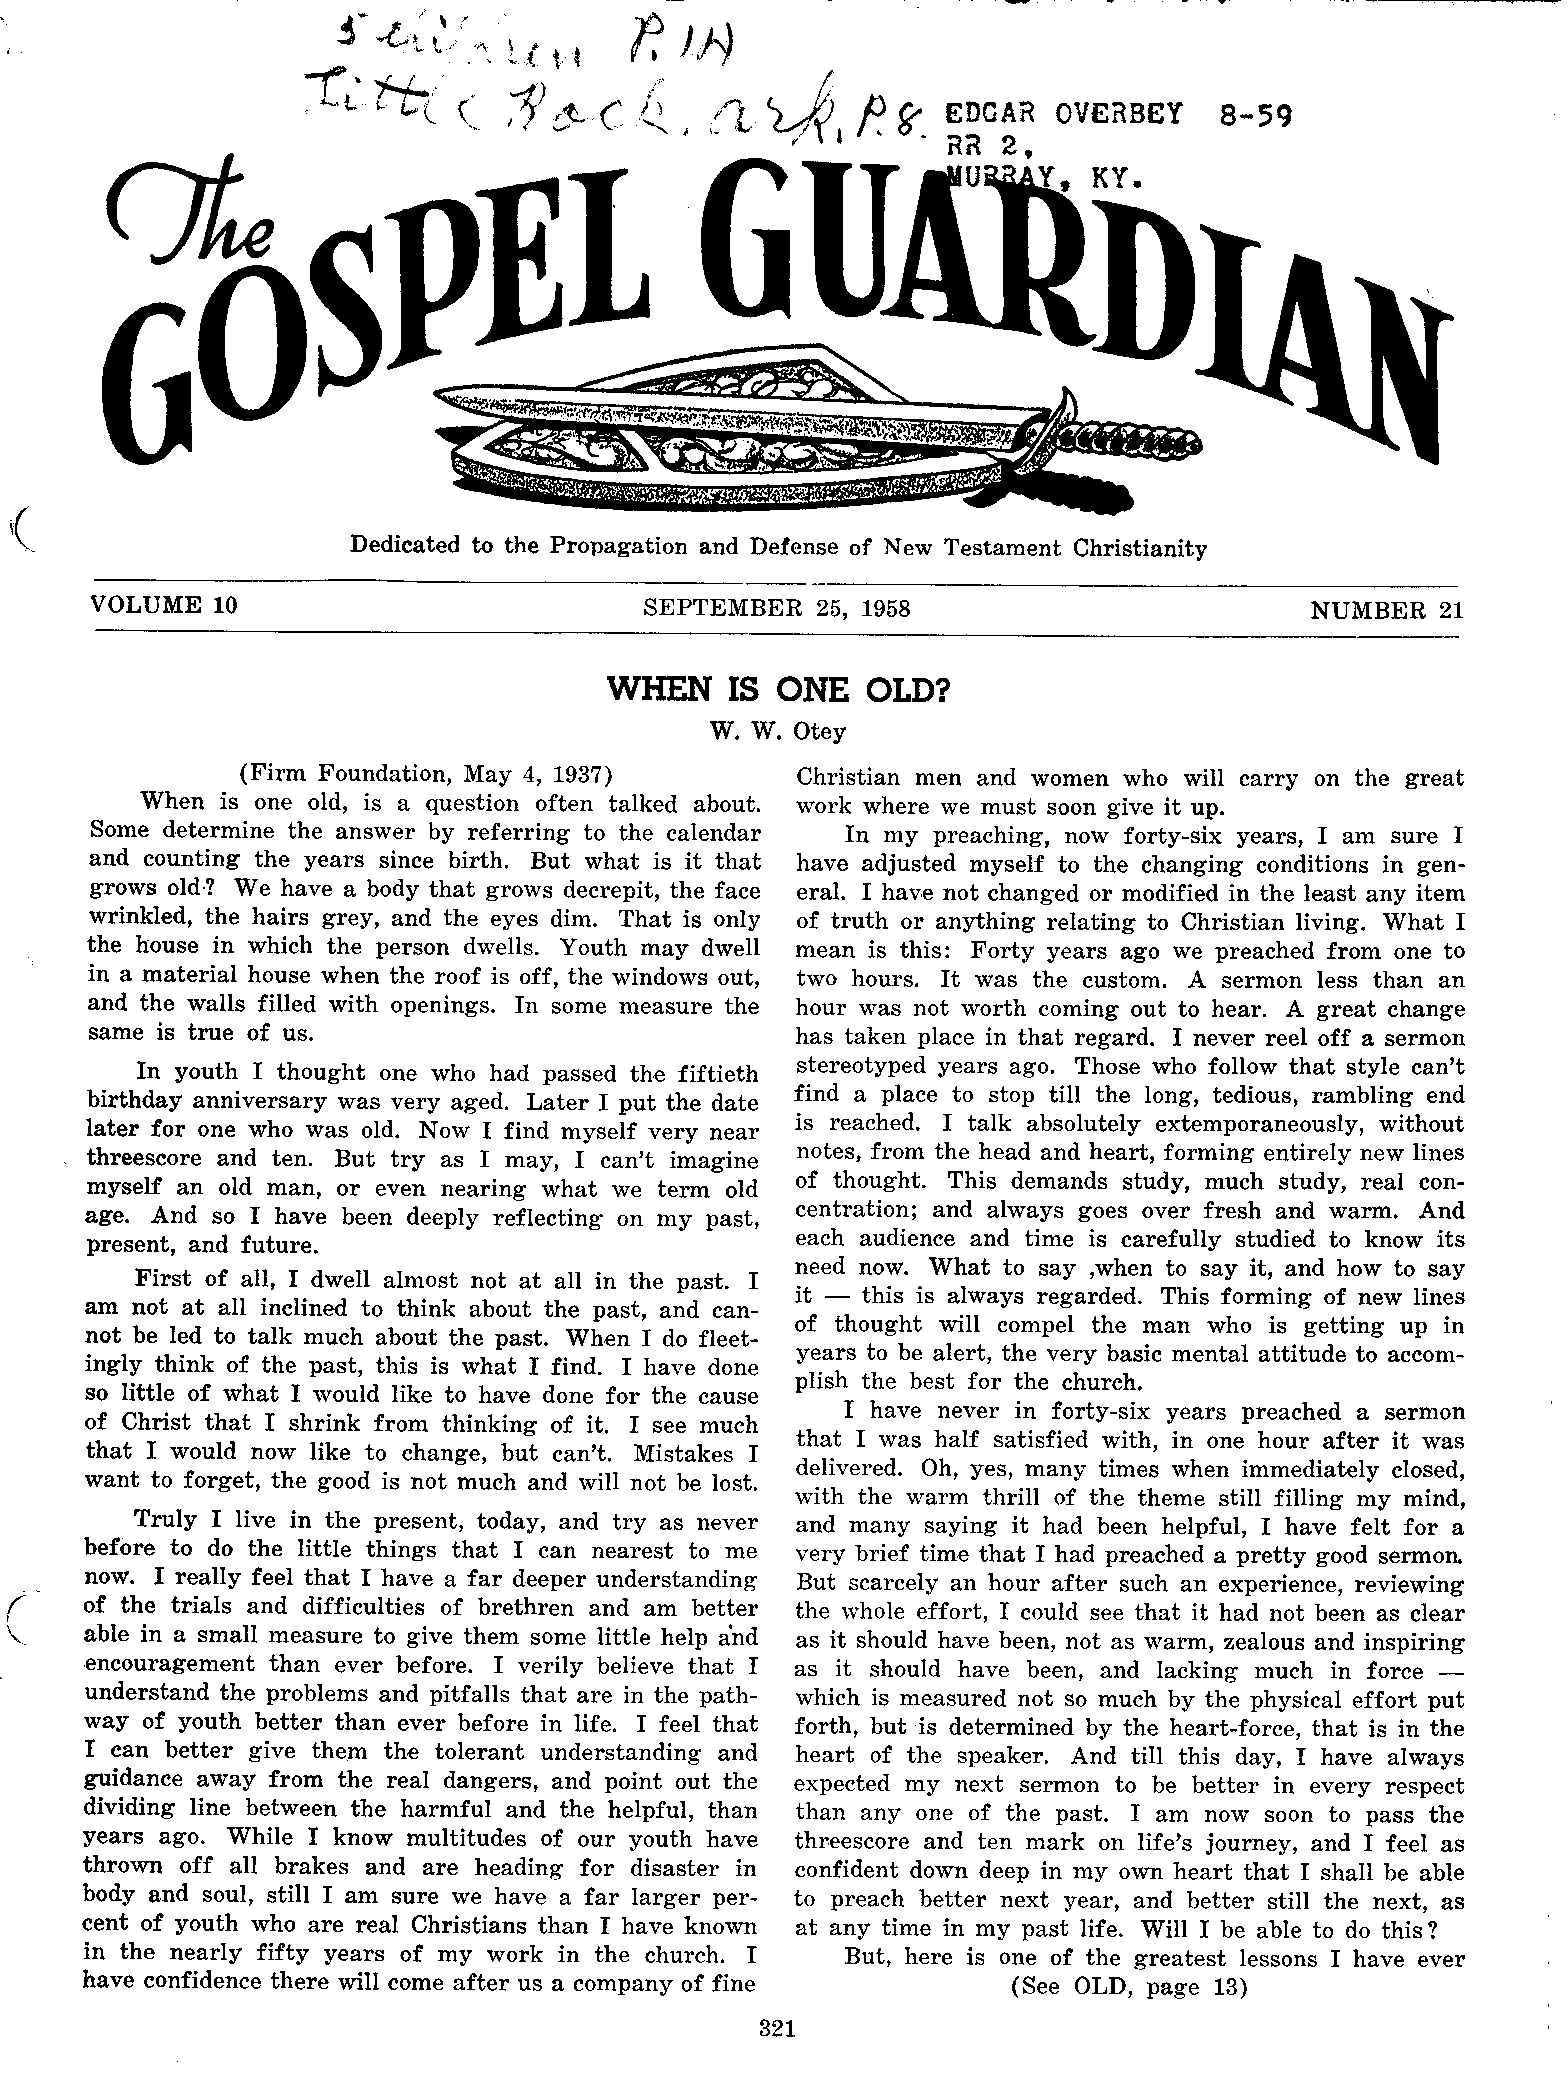 Gospel Guardian Original: Vol.10 No.21 Pg.1